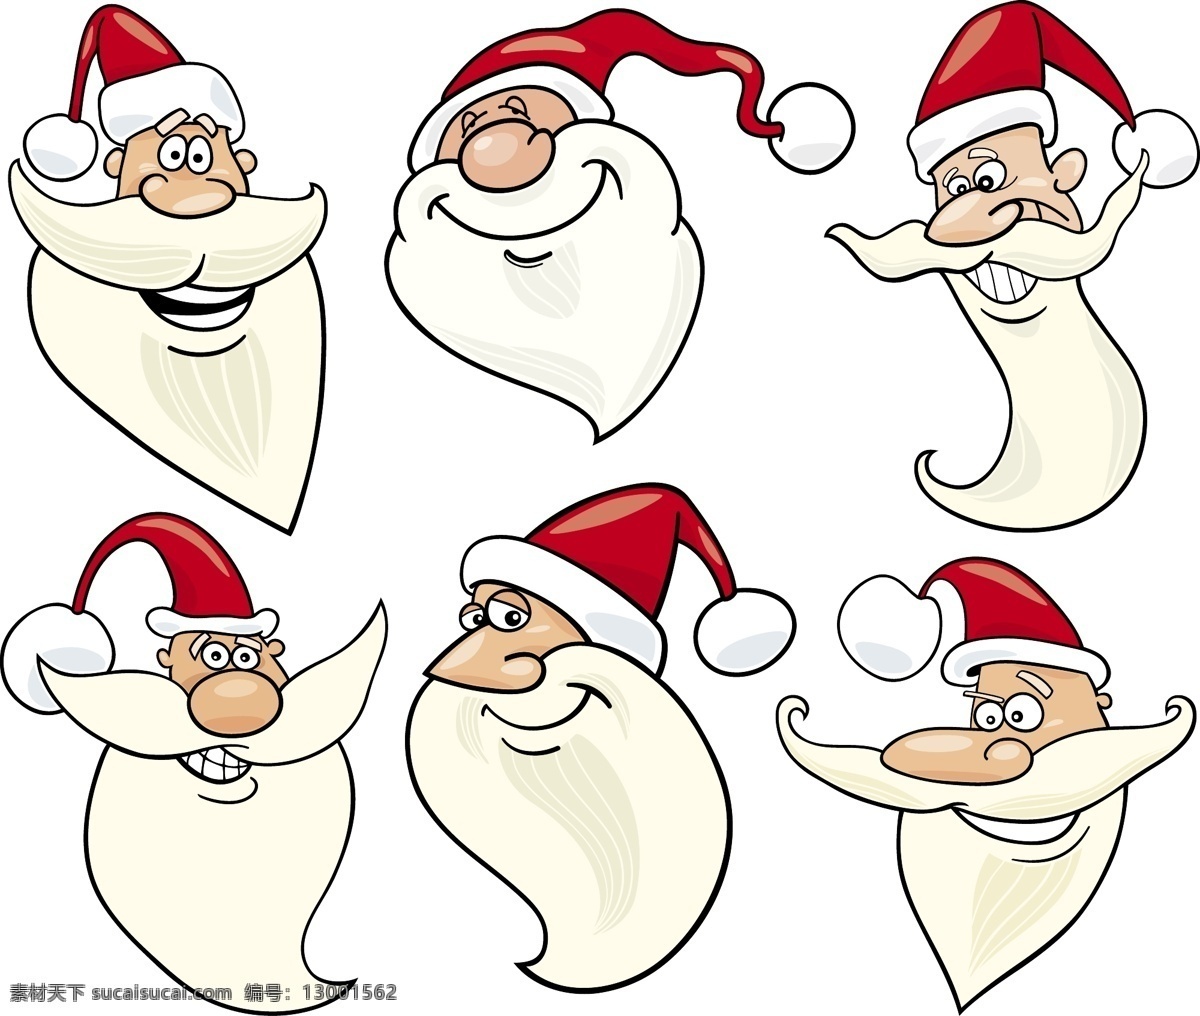 矢量 圣诞老人 头像 圣诞节 卡通图案 时尚花纹 花纹 边框 背景图案 卡通形象 矢量人物 矢量素材 白色